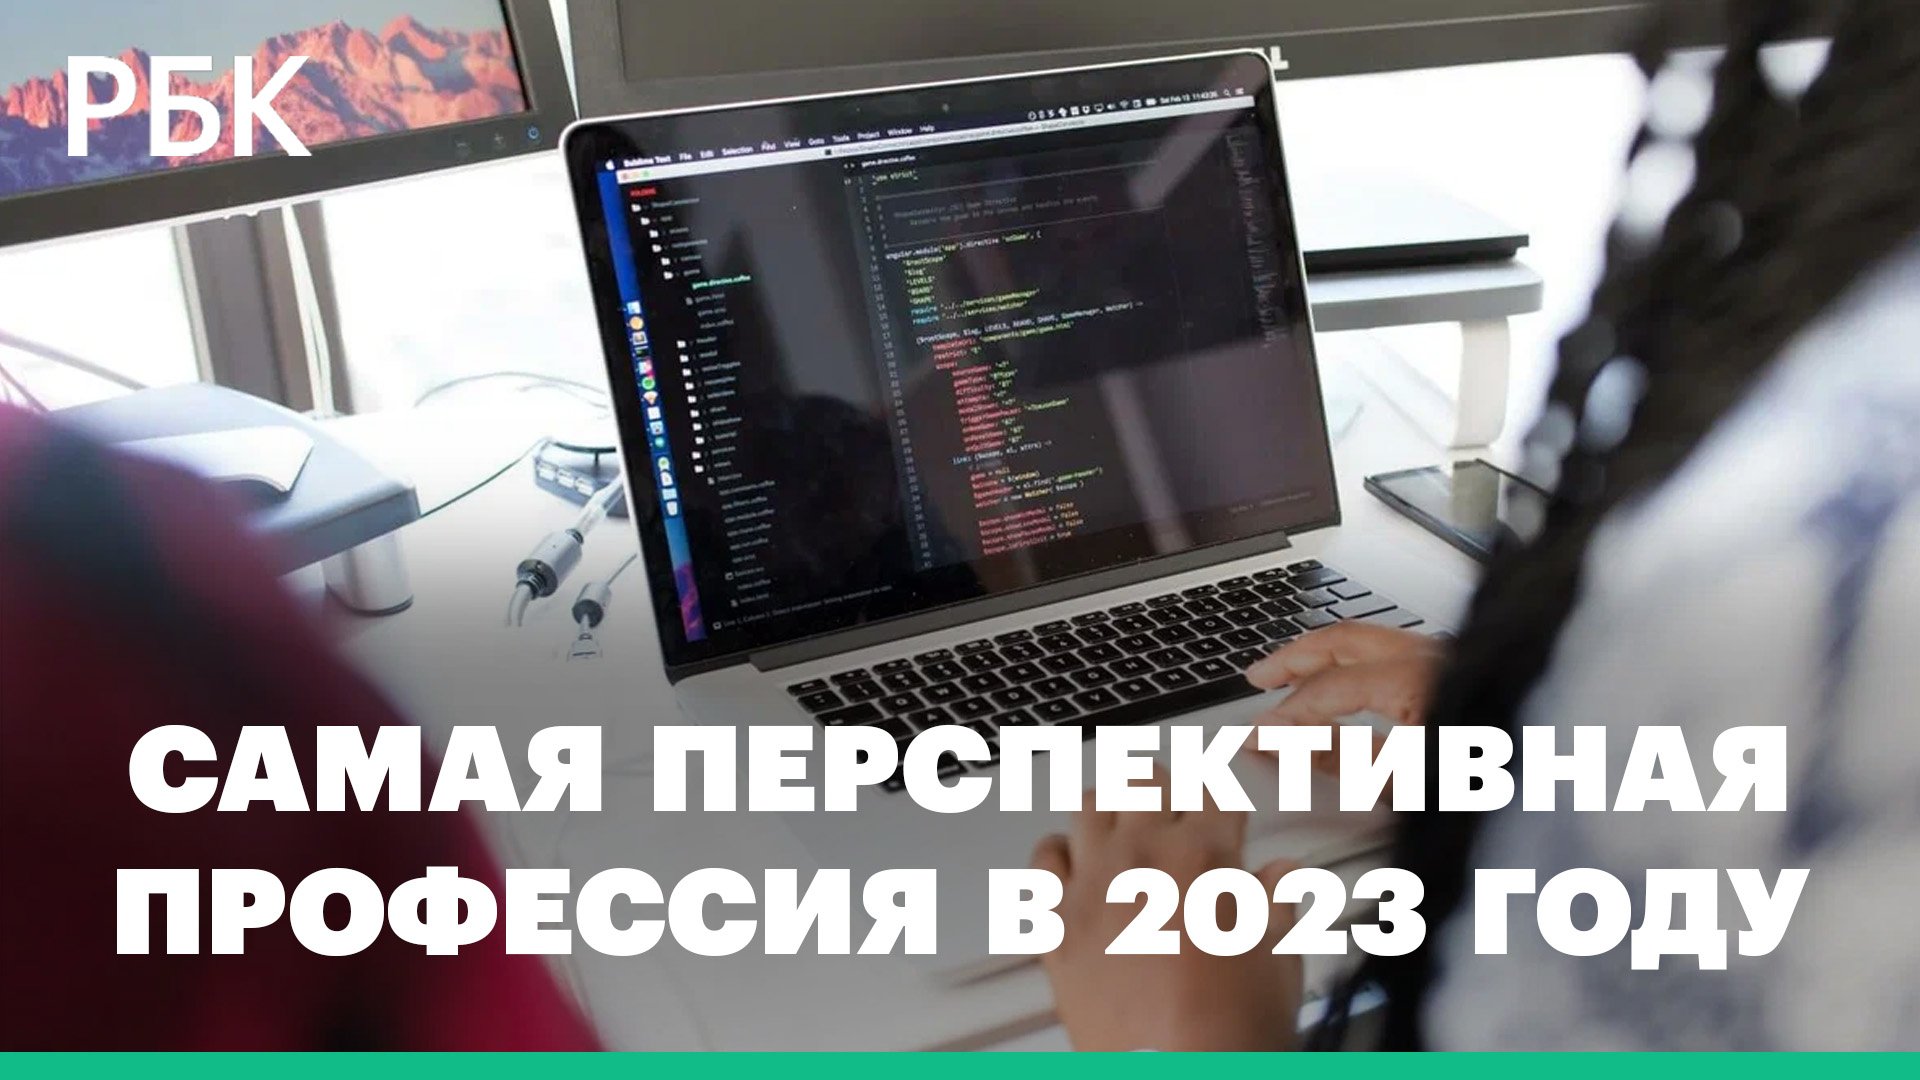 Россияне выбрали самую перспективную профессию в 2023 году